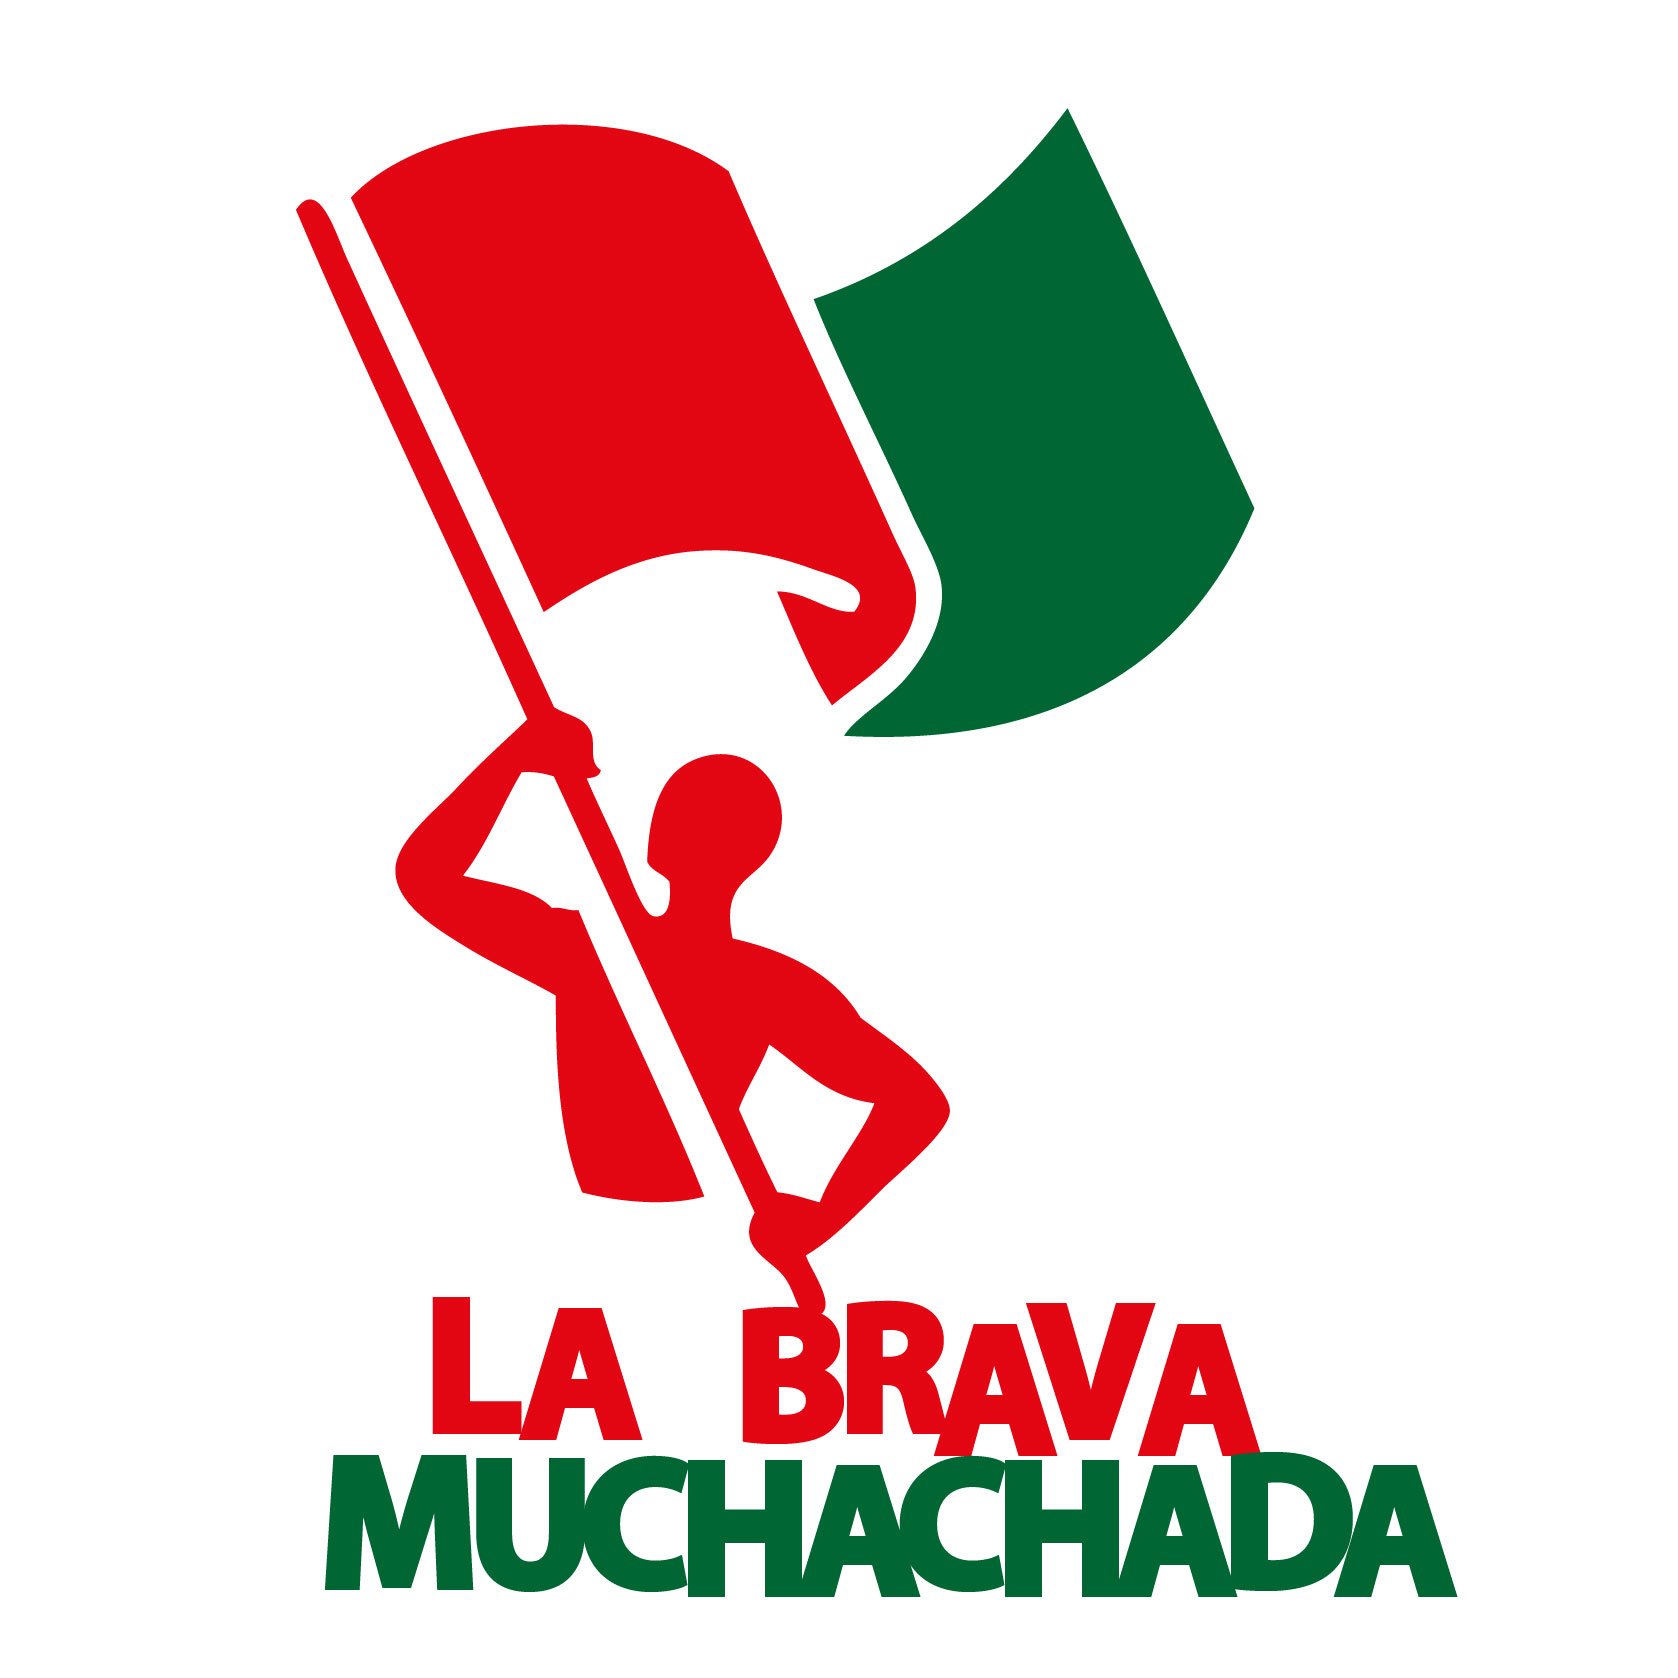 Cuenta Oficial de La Brava Muchachada. CLUB AGUADA - Montevideo, Uruguay DESDE ➊➒➋➋ - DUEÑOS DEL BASKET https://t.co/PpfhGHC9ak